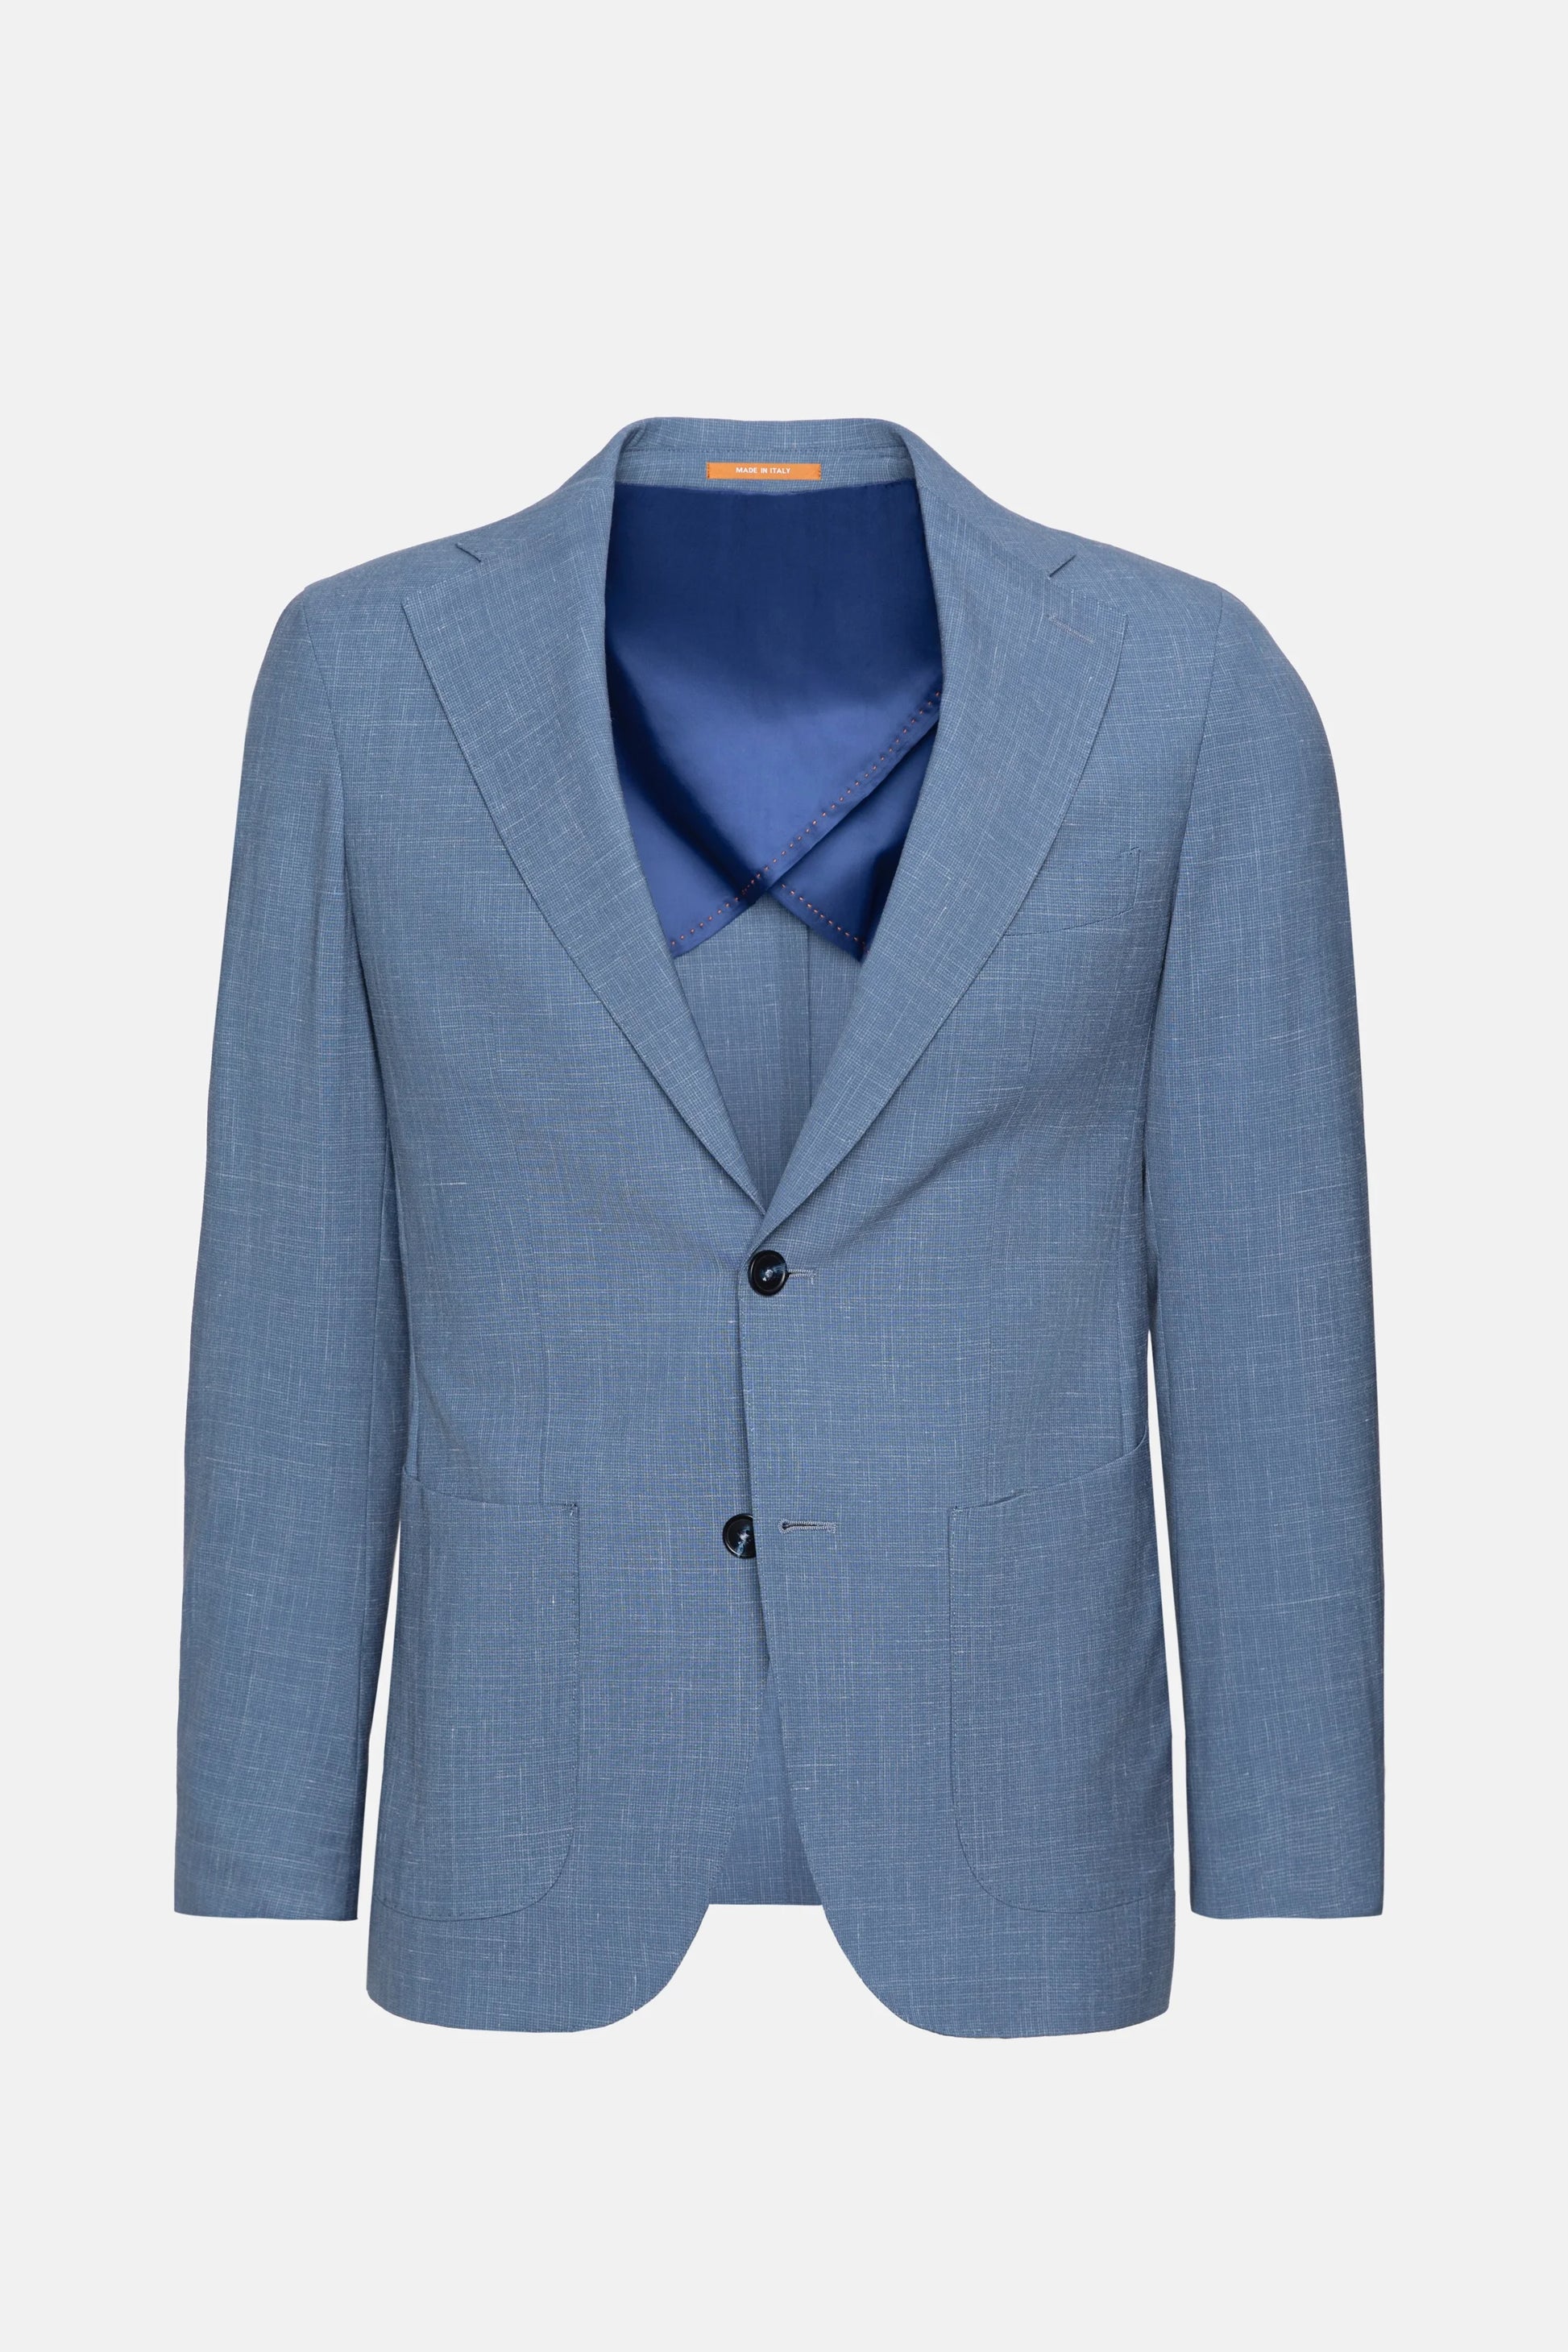 Light Blue Flexo Suit Menswear Casual Suits 